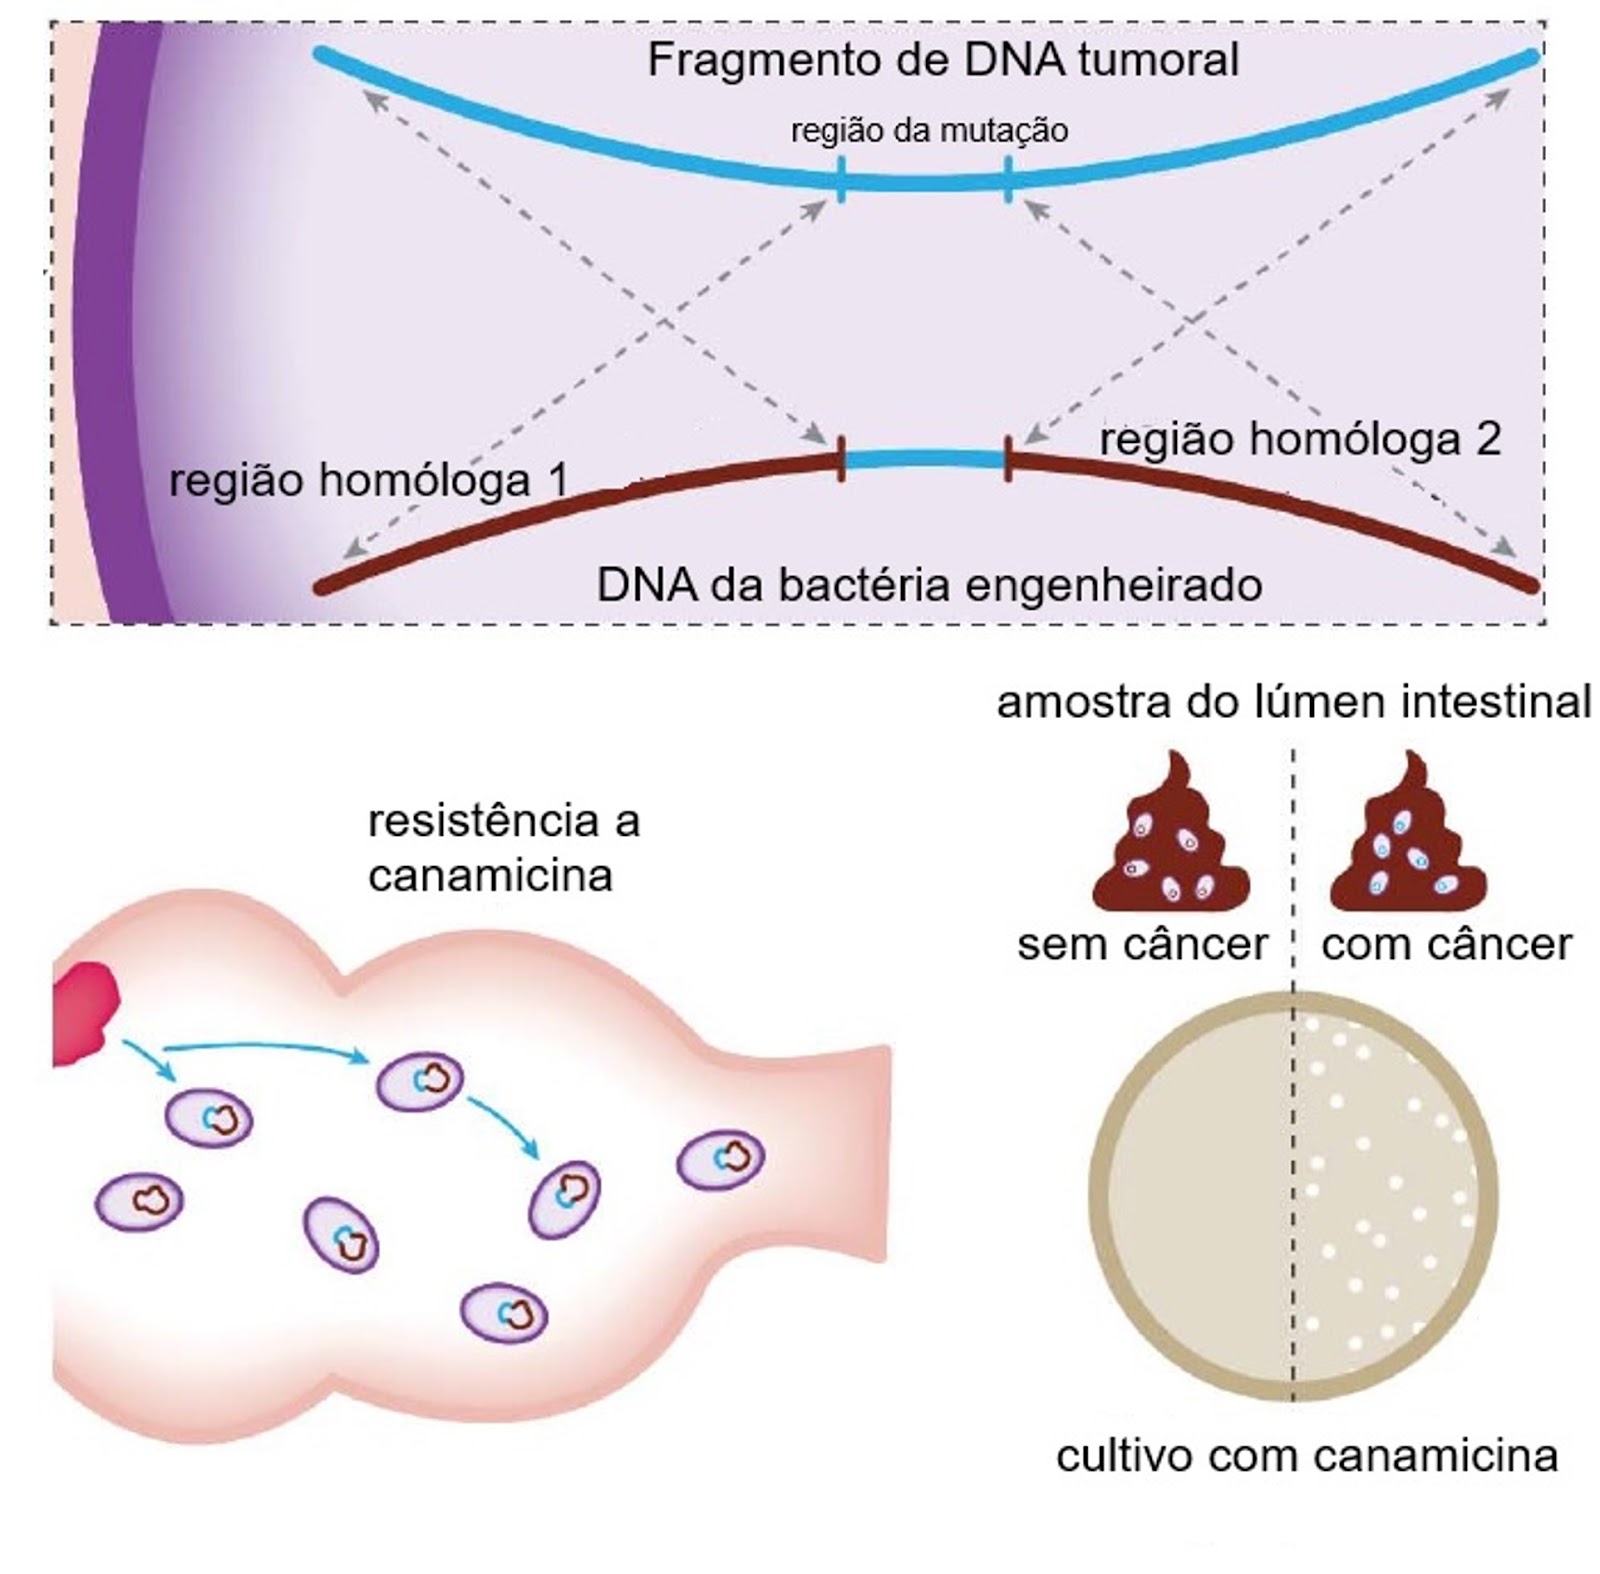 Recombinação homóloga do fragmento de DNA tumoral com o DNA bacteriano 